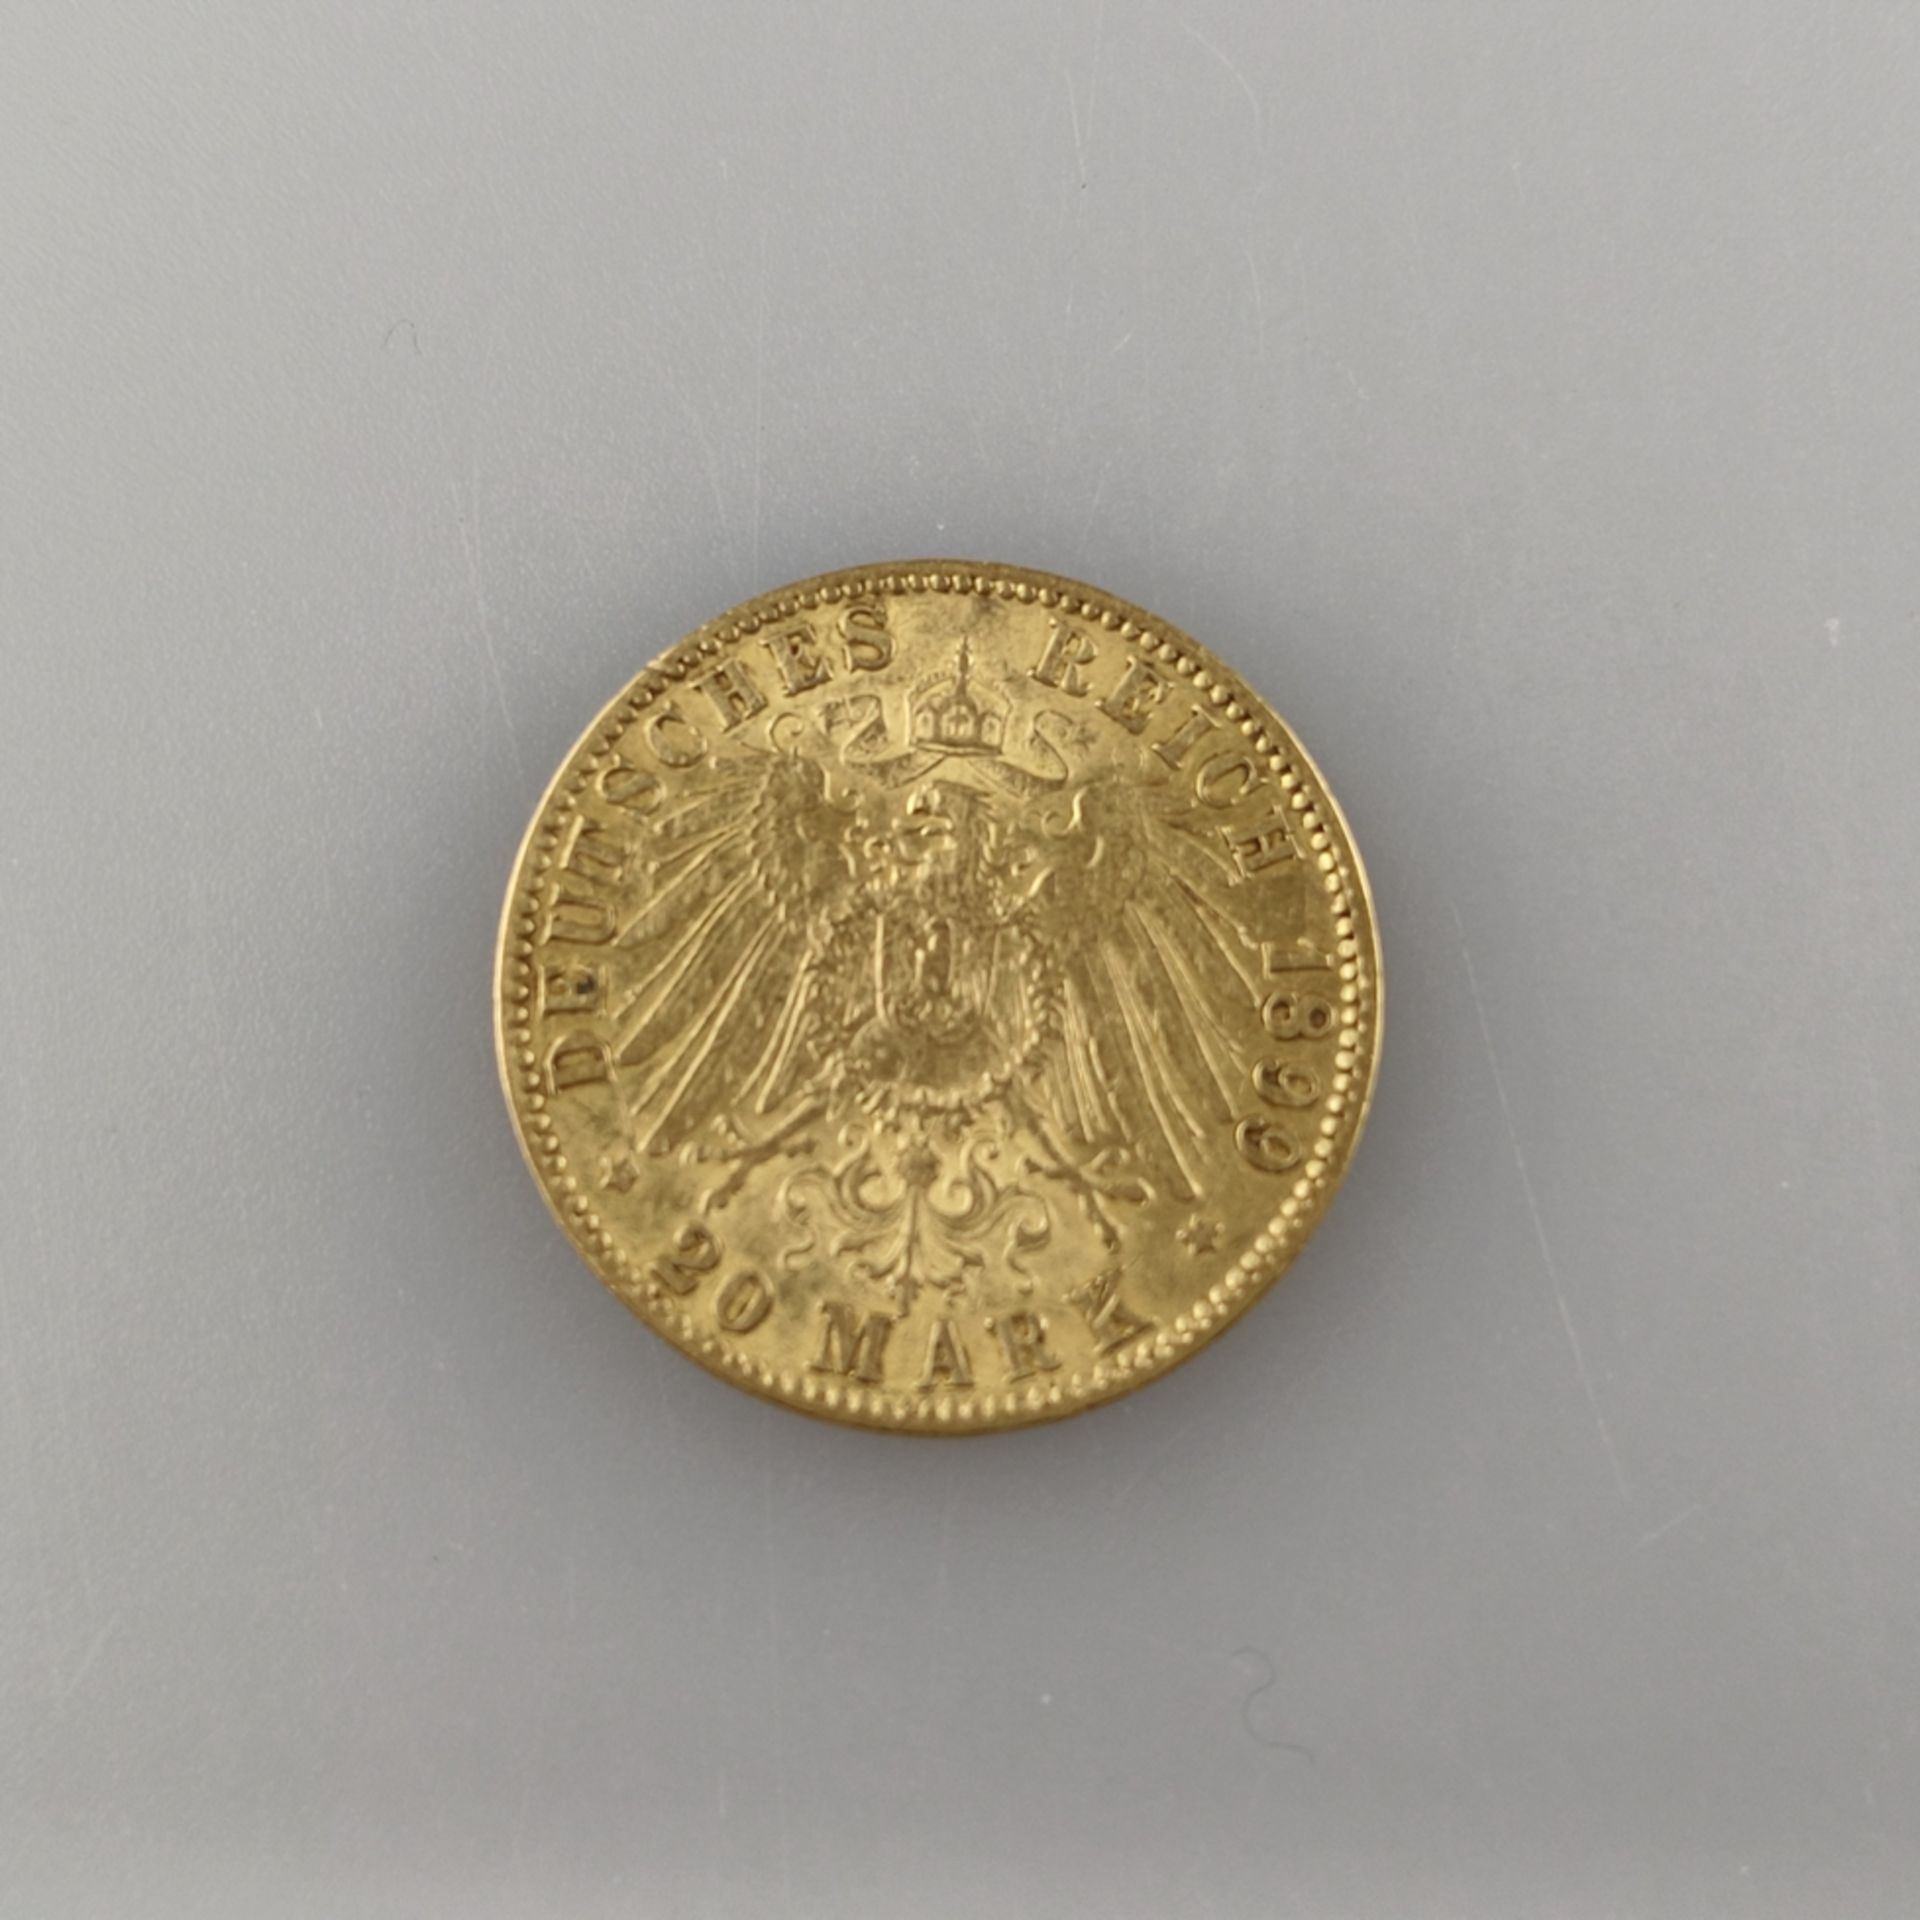 Goldmünze 20 Mark 1899- Deutsches Kaiserreich, Freie und Hansestadt Hamburg, 900/000 Gold, Prägemar - Image 2 of 3